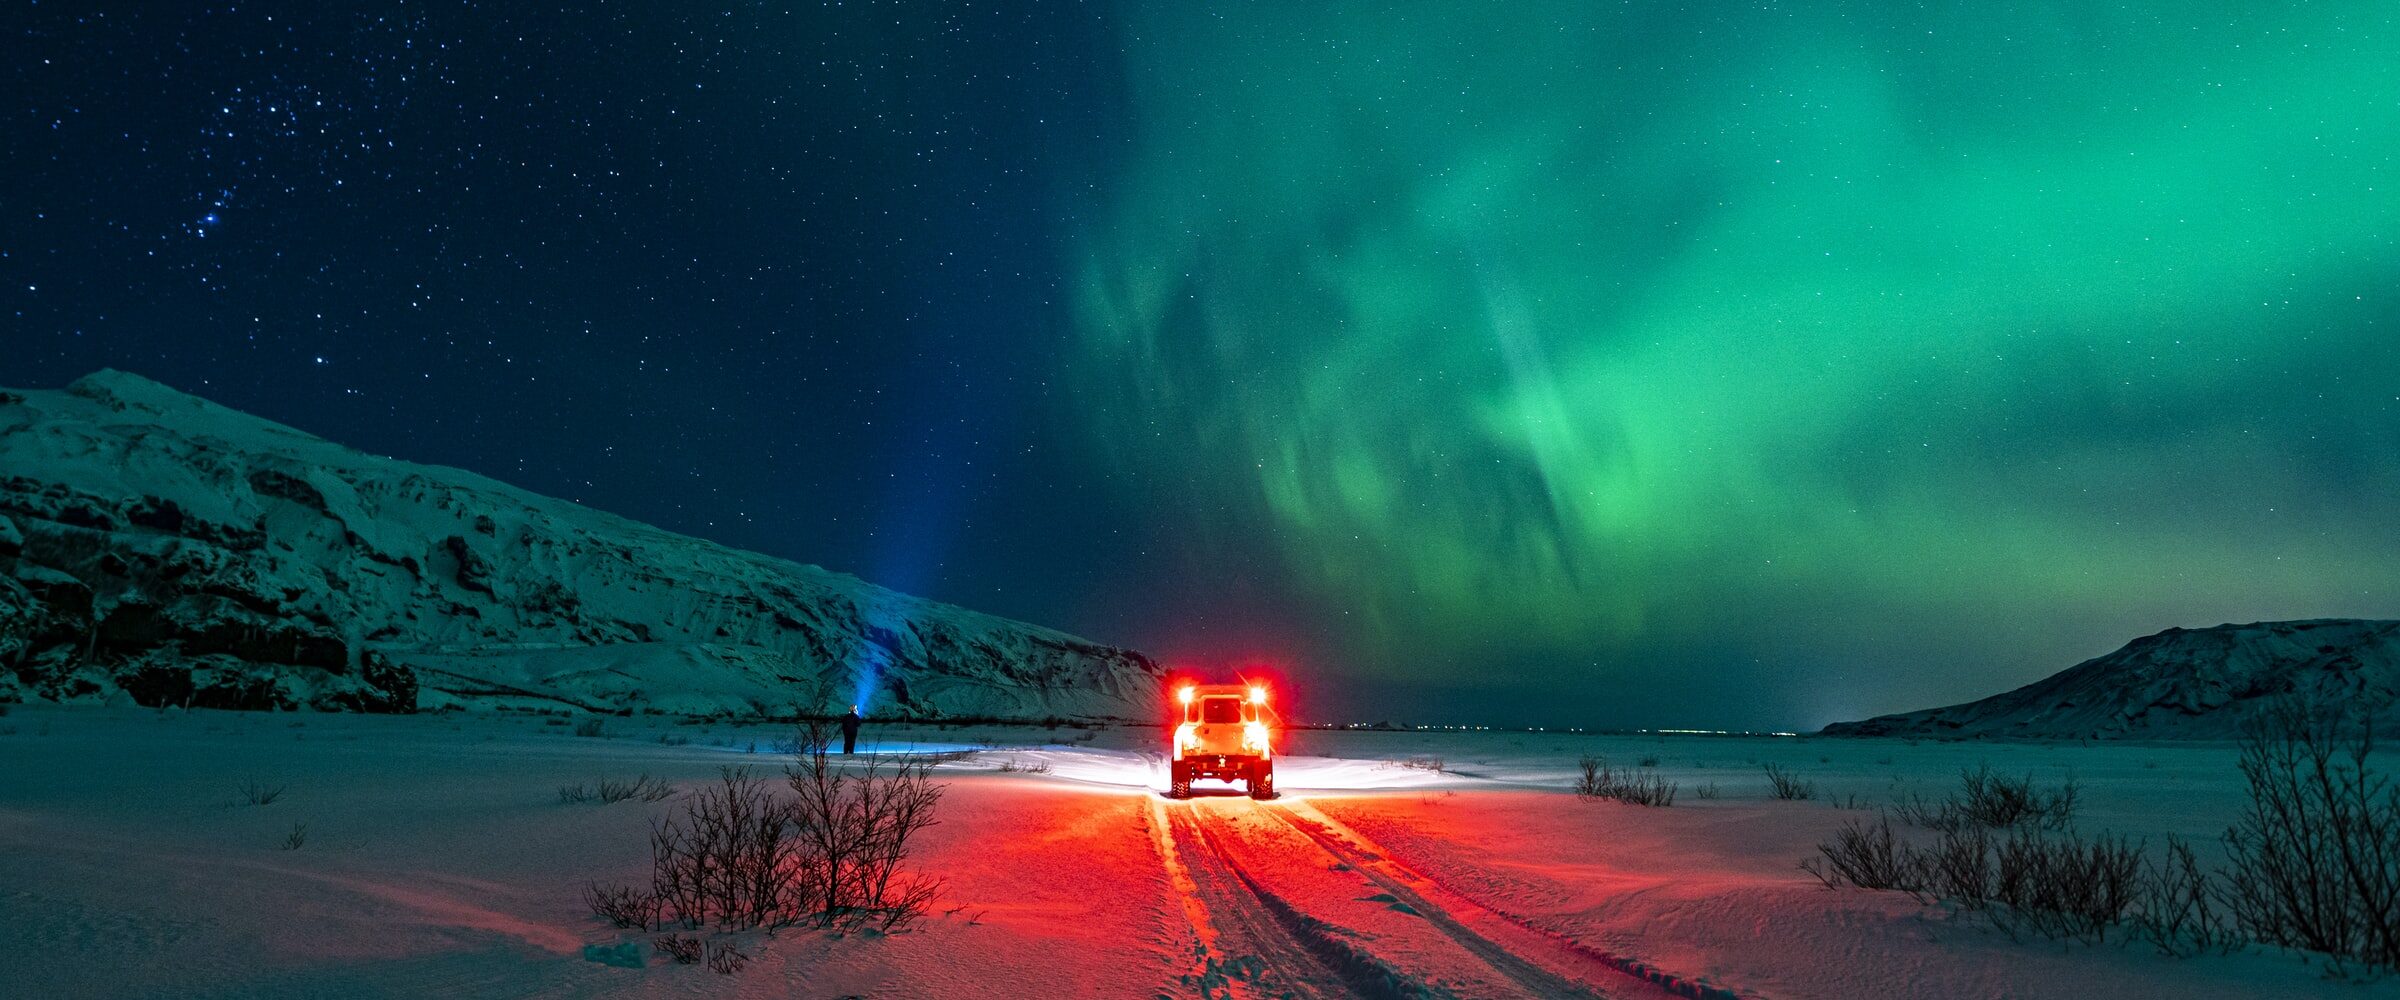 Noorderlicht, Aurora Borealis